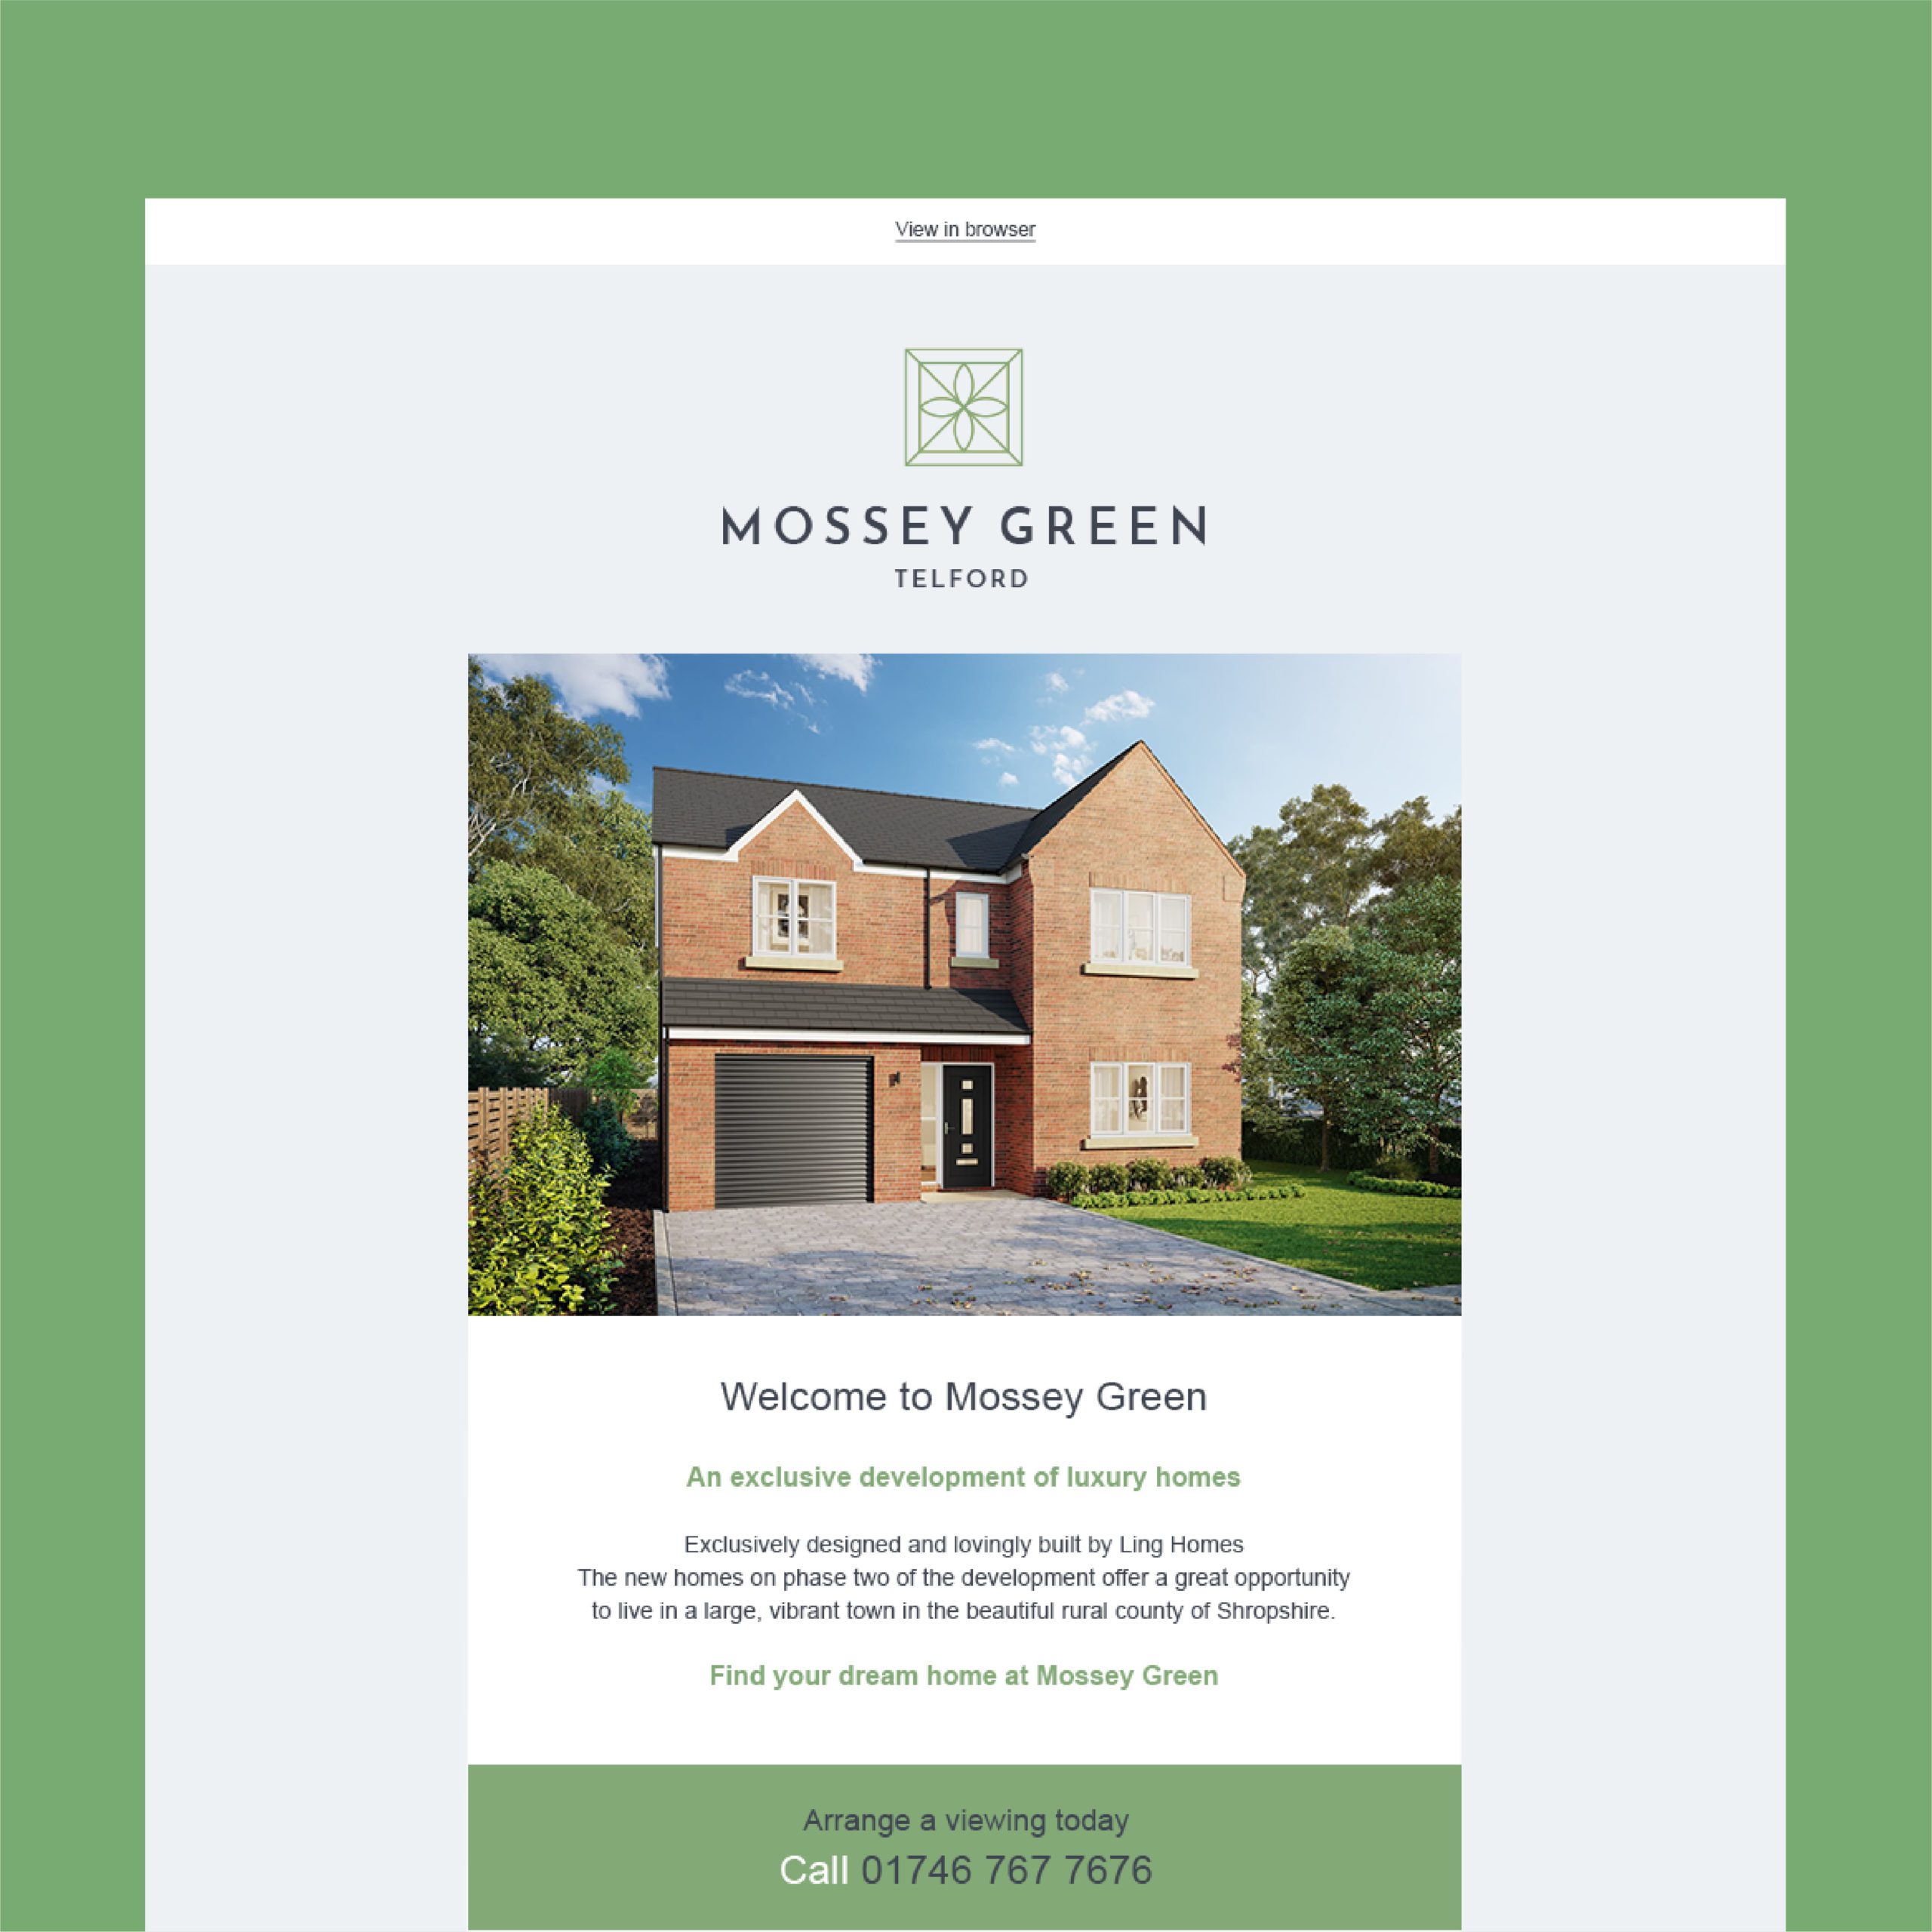 Mossey Green Construction Marketing | Reech